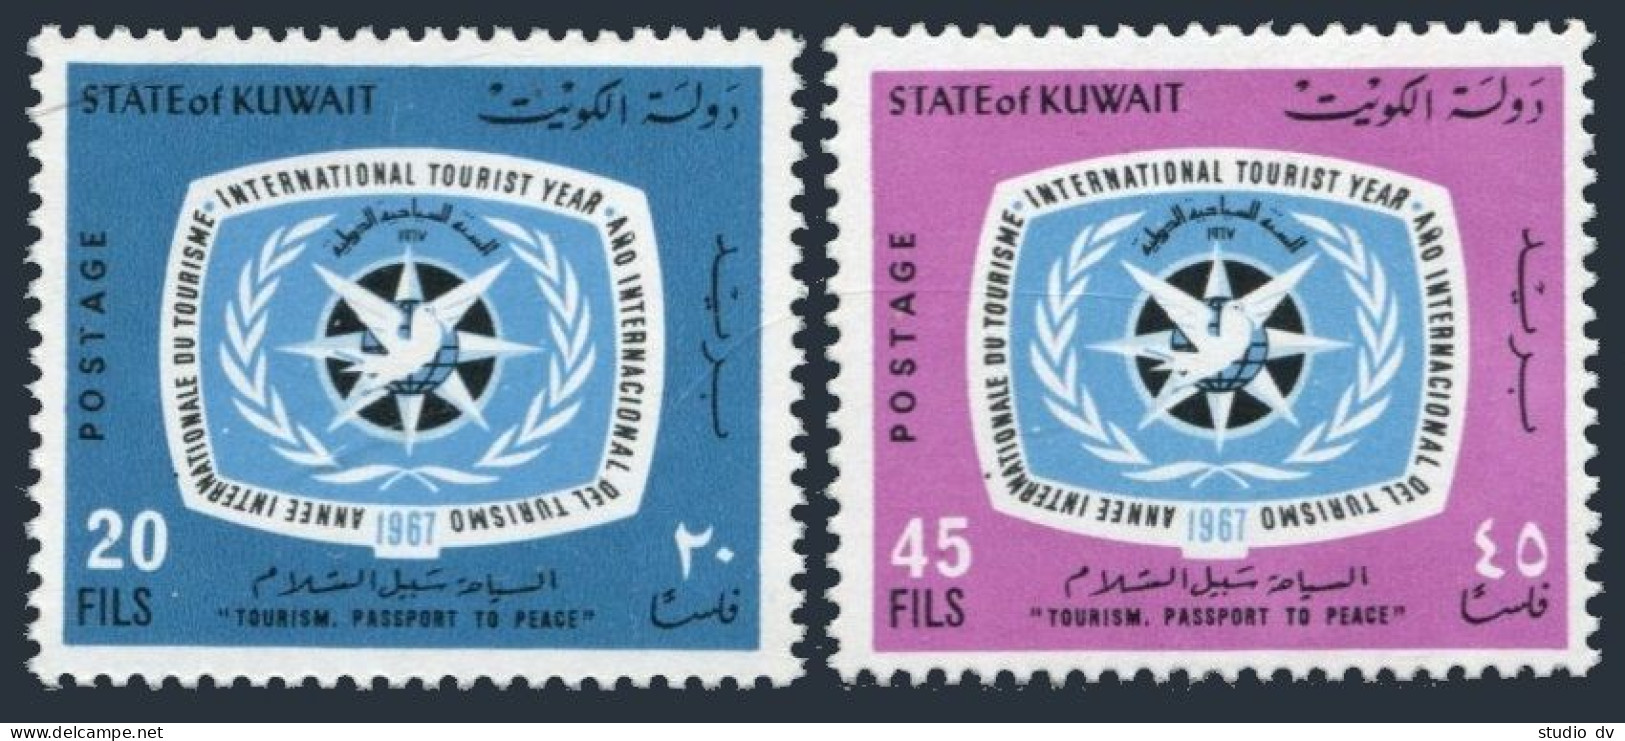 Kuwait 366-367, MNH. Mi 362-363. International Tourist Year ITR-1967. Emblem. - Kuwait